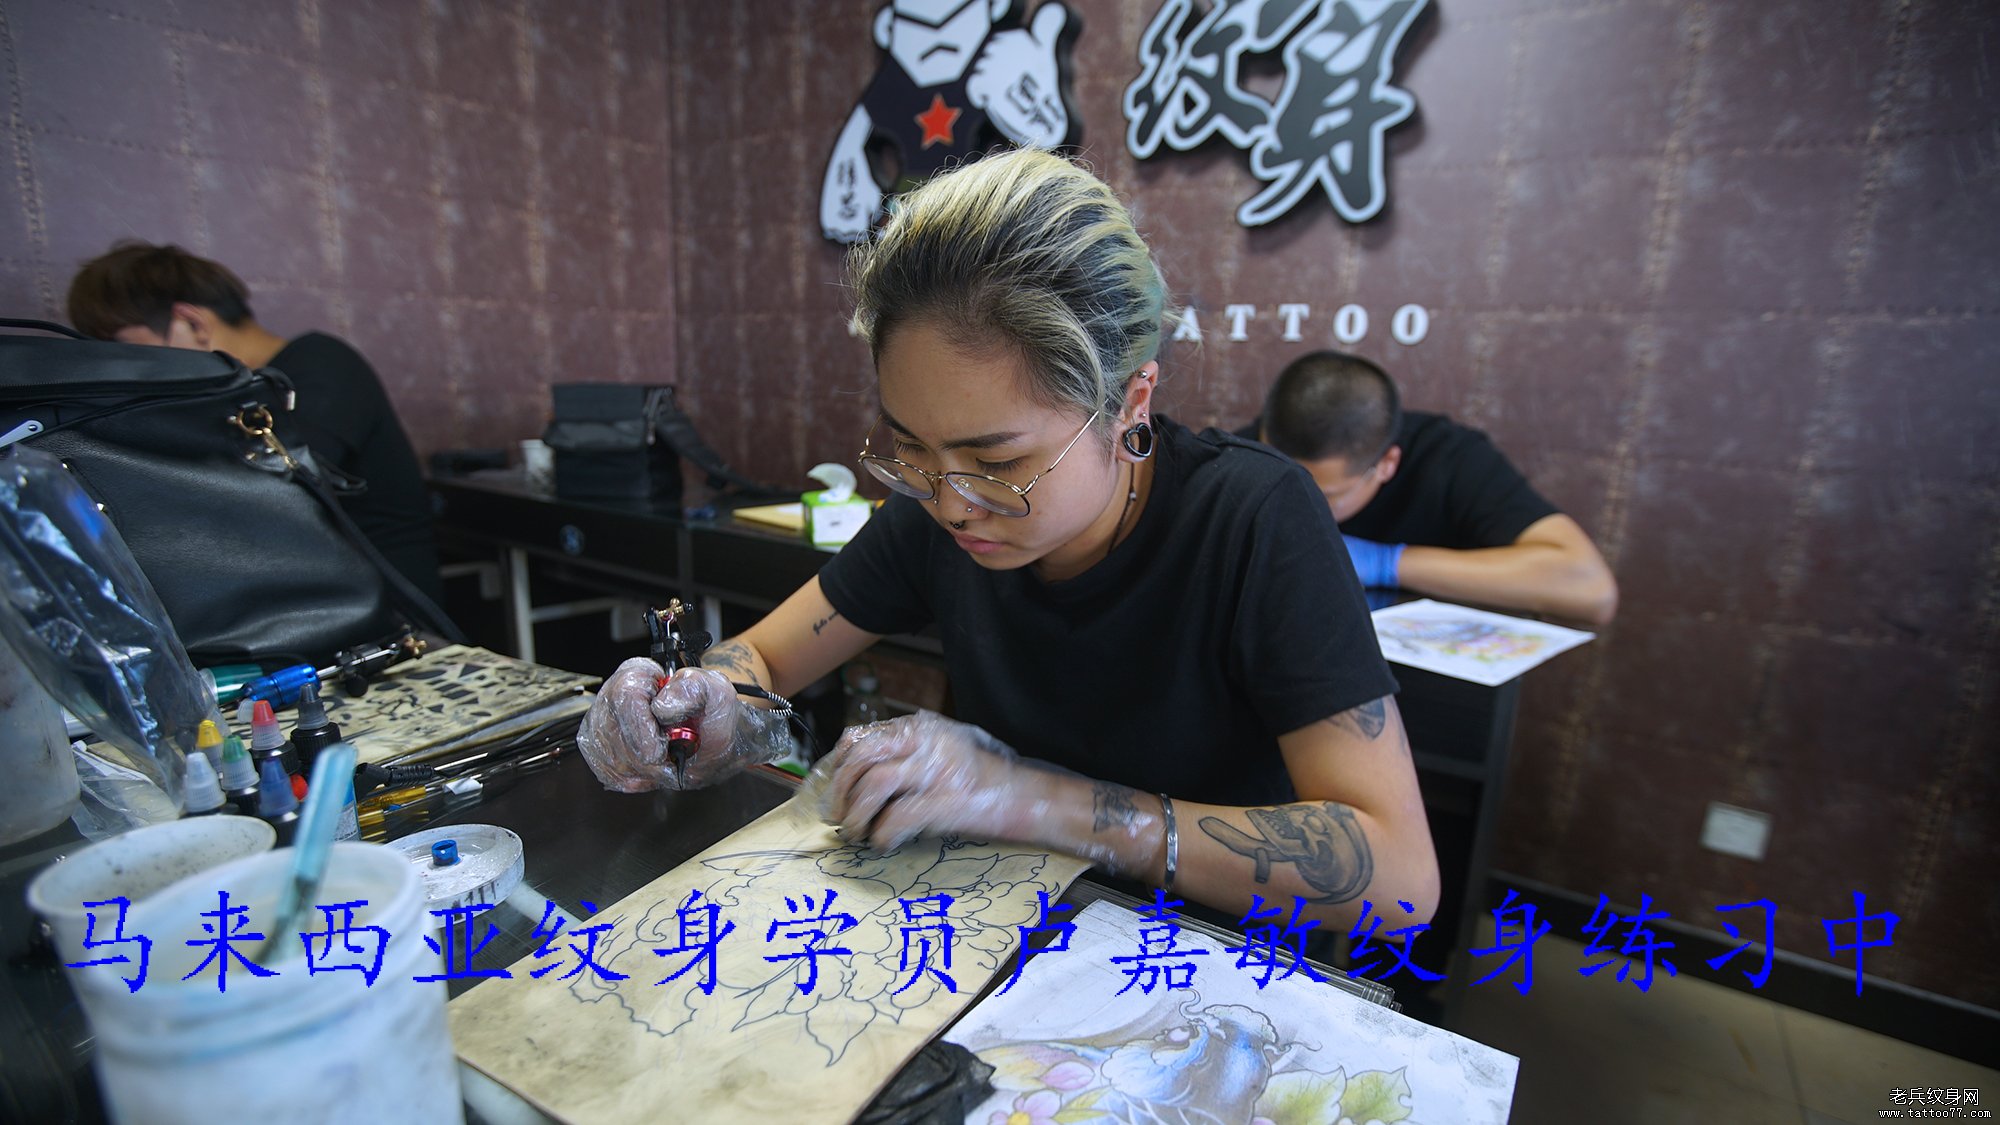 马来西亚纹身学员卢嘉敏纹身练习中